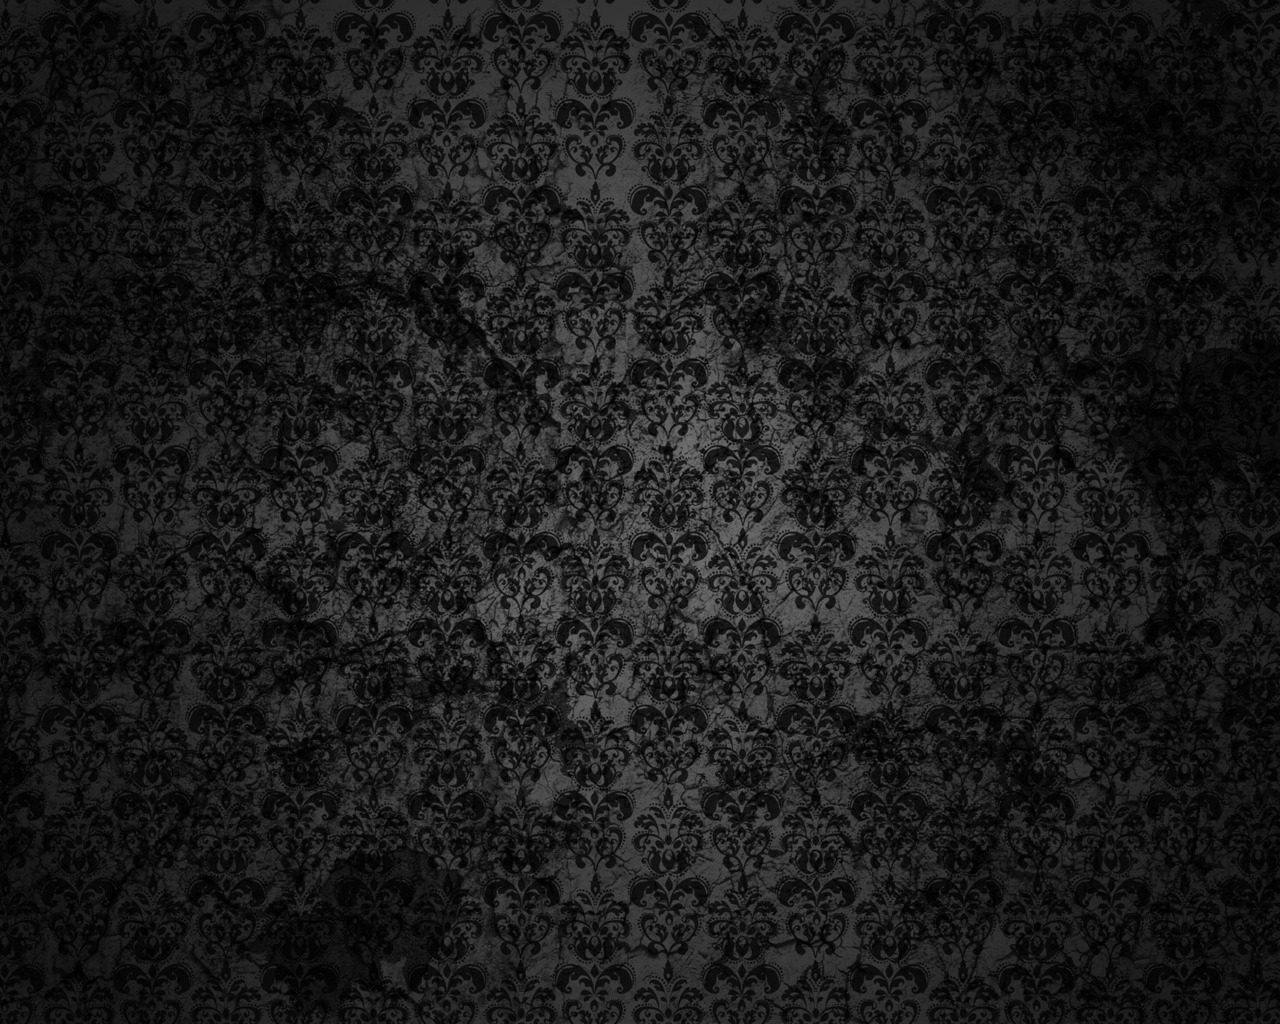 Black Floral Grunge for 1280 x 1024 resolution